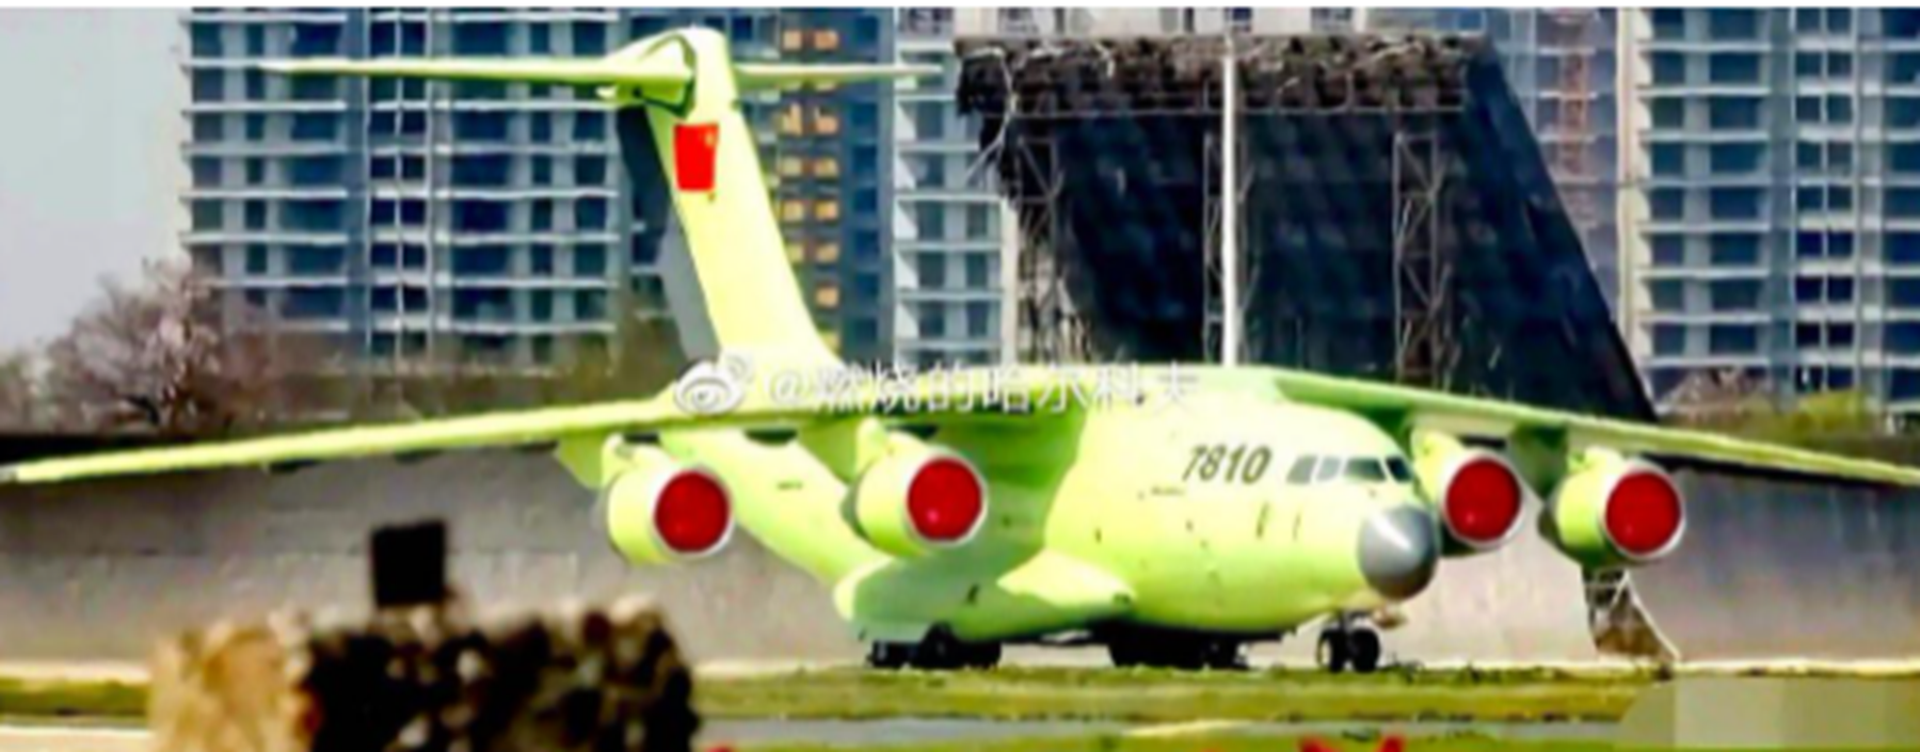 中国运-20安装涡扇-20发动机试飞。这架运-20黄皮机编号为“7810”。（微博@燃烧的哈尔科夫）